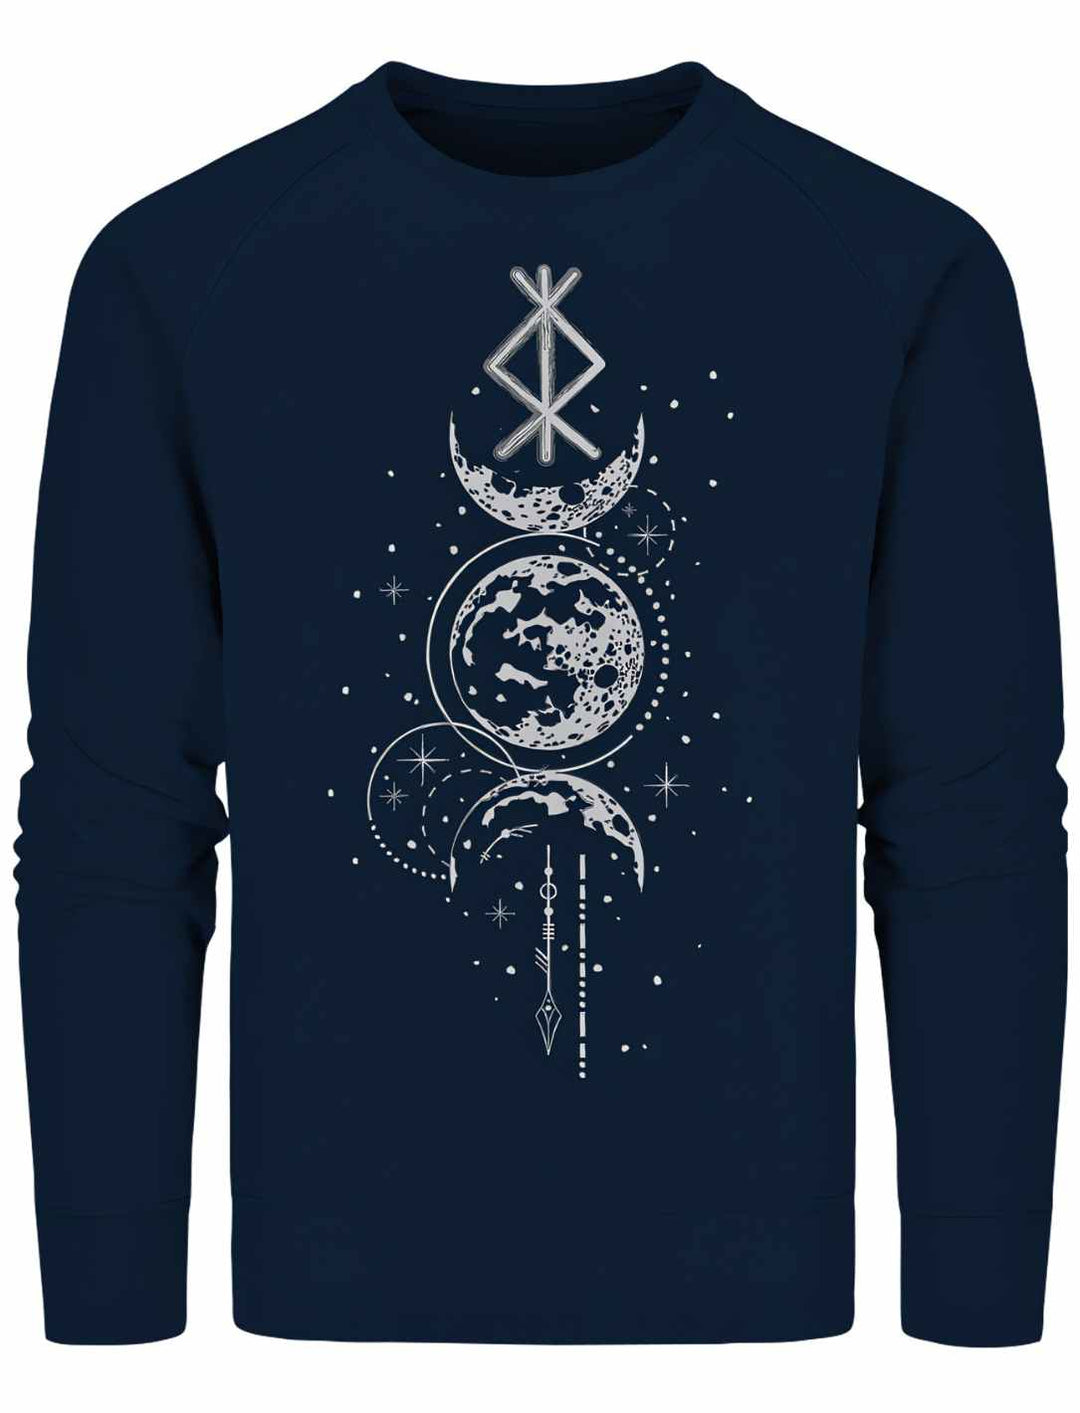 Sweat Shirt - Rune des Mondschein Wächters, nordisches Design in french navy. Von Runental.de